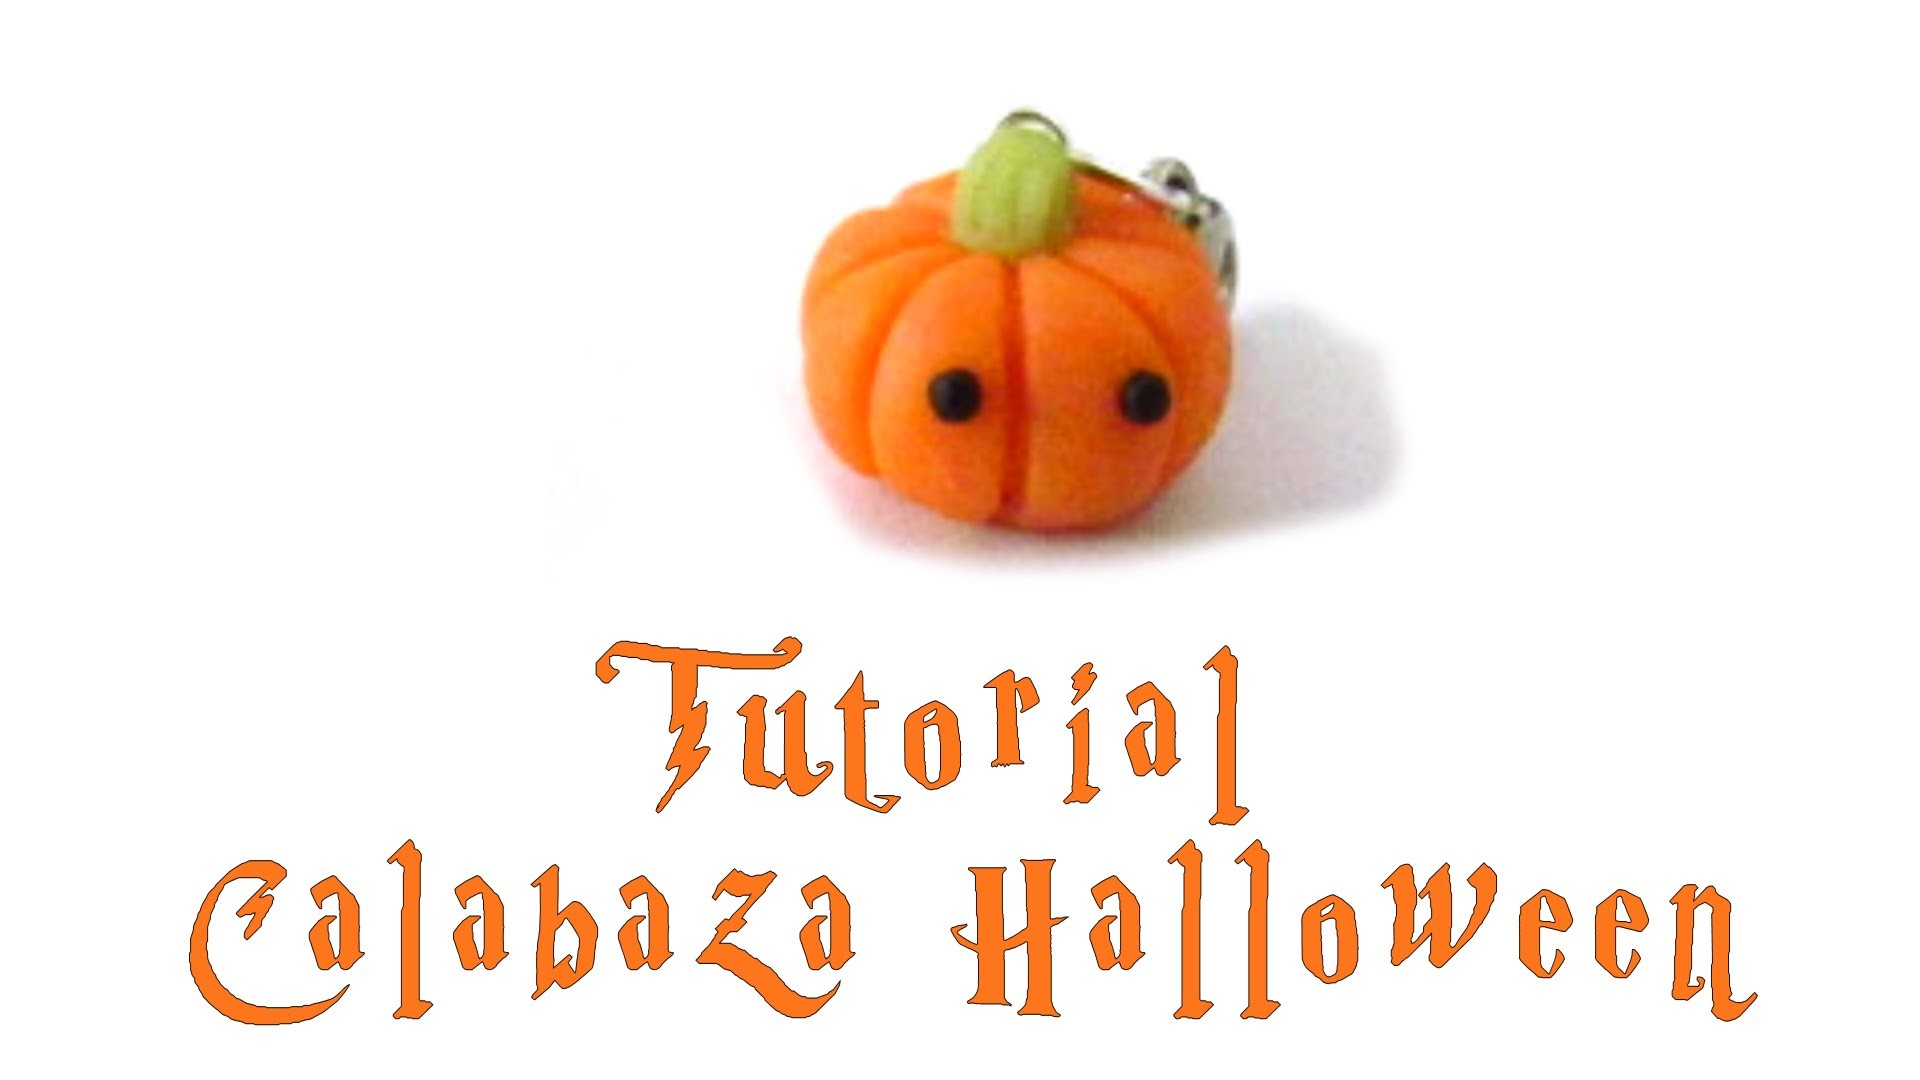 Calabaza Kawaii Halloween.DIY TUTORIAL ARCILLA POLIMERICA